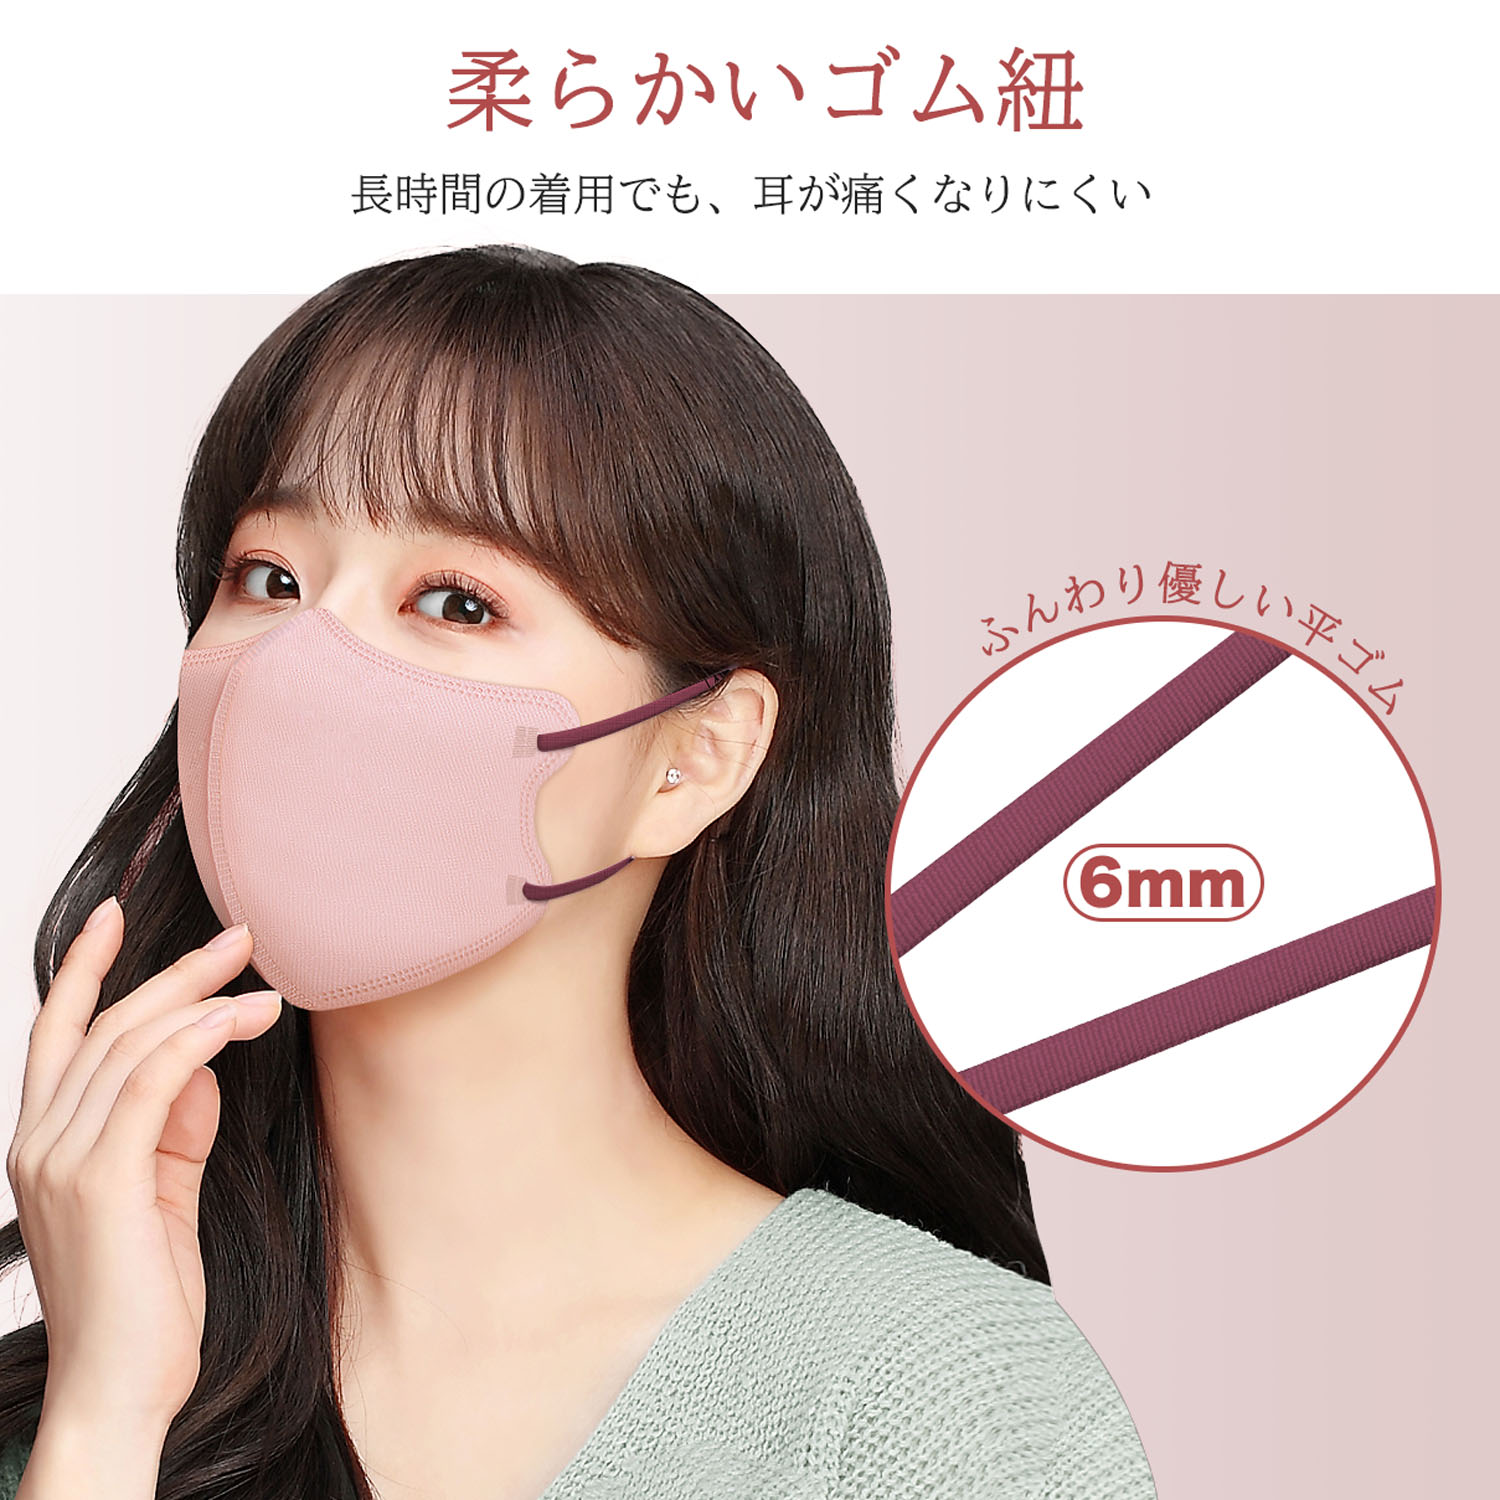 立体マスク 3D 不織布 日本製 カラー くちばし 10枚 小顔 使い捨て メガネが曇りにくい 呼吸しやすい 口紅に付かない 耳が痛くならない 熱中症対策【マスク工業会会員】917545